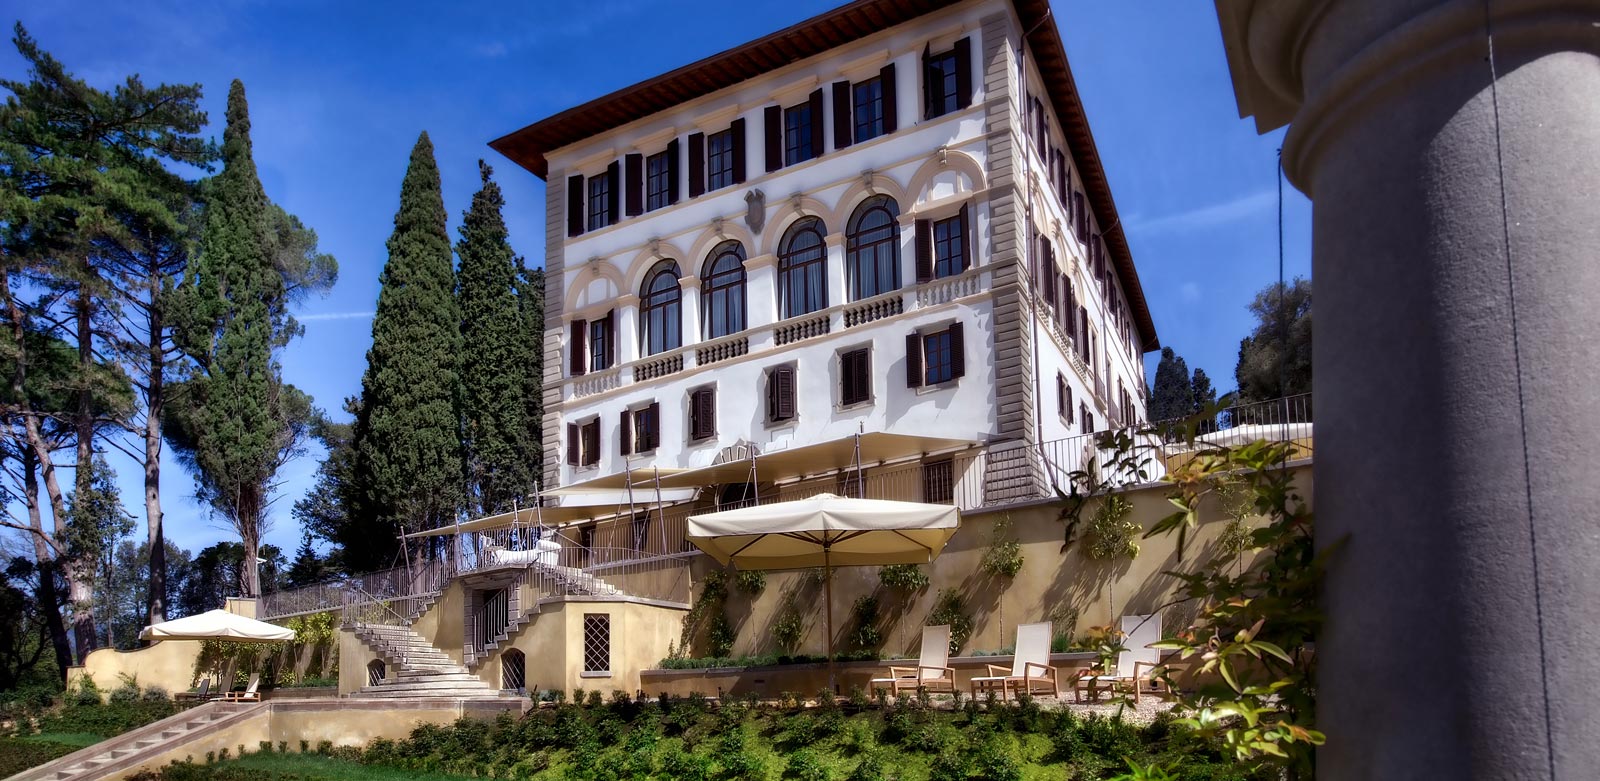 The Villa In all its glory. Photo credit: Il Salviatino 